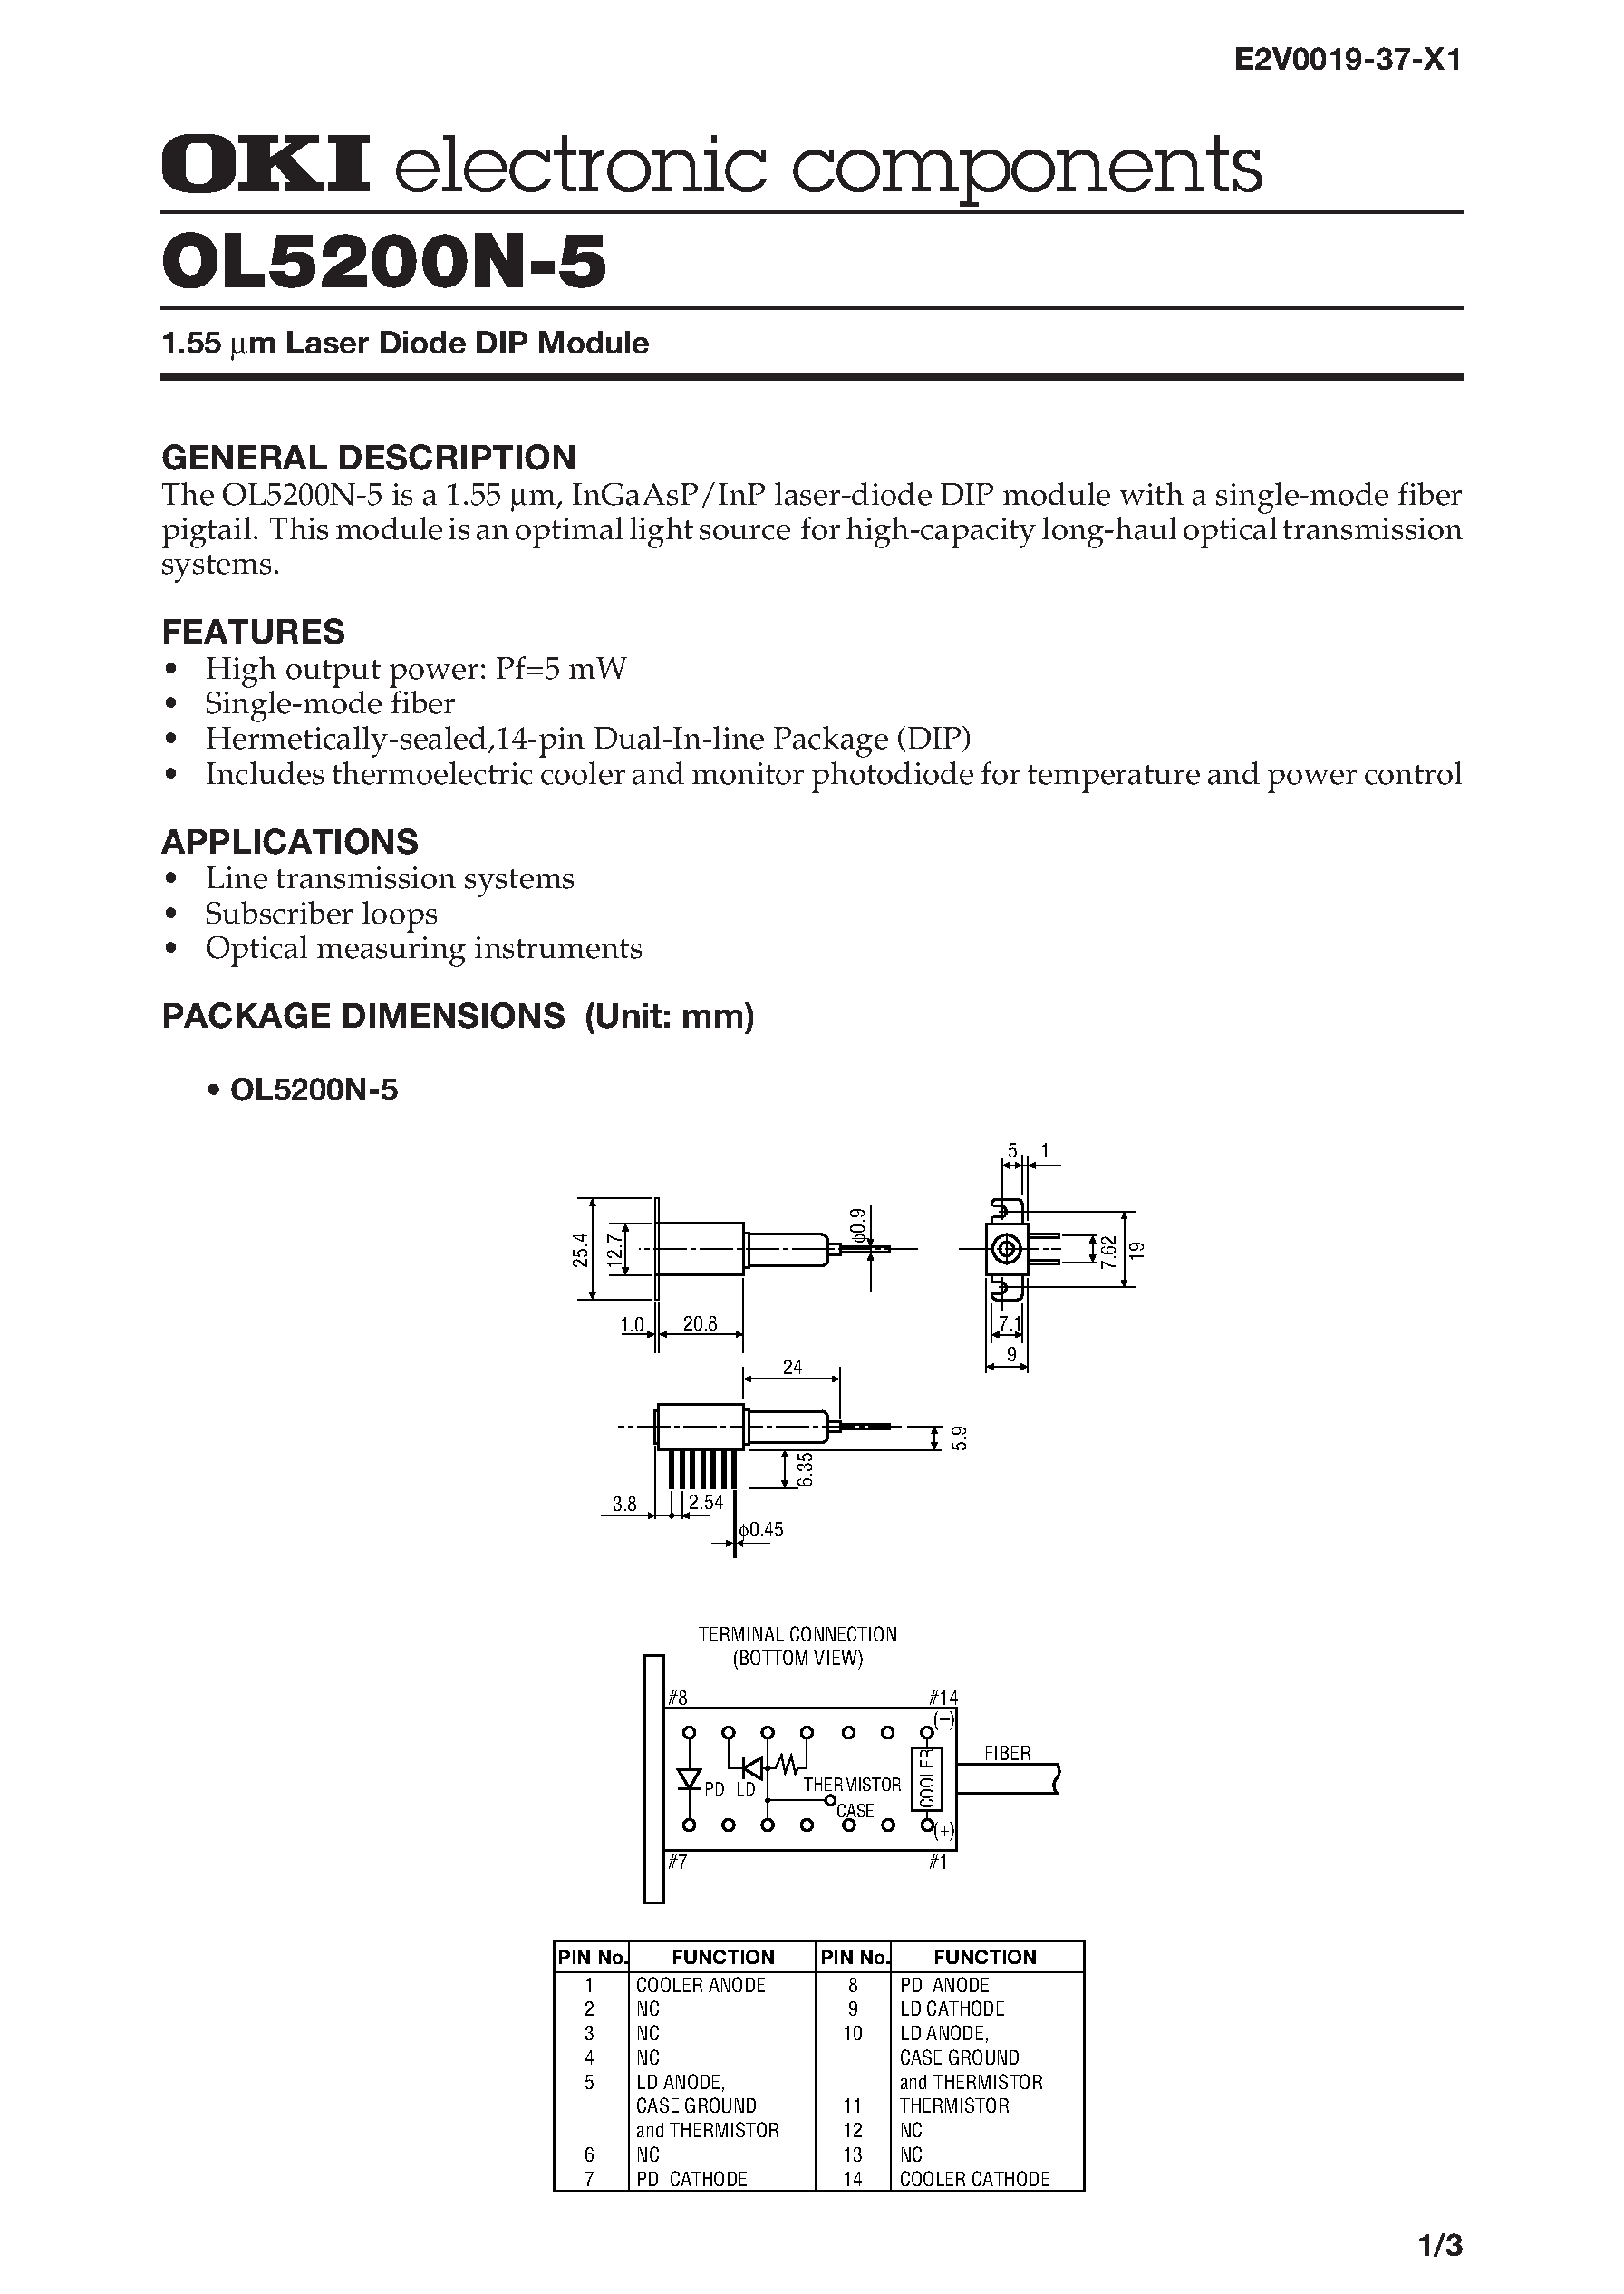 Datasheet OL5200N-5 - 1.55 m Laser Diode DIP Module page 1